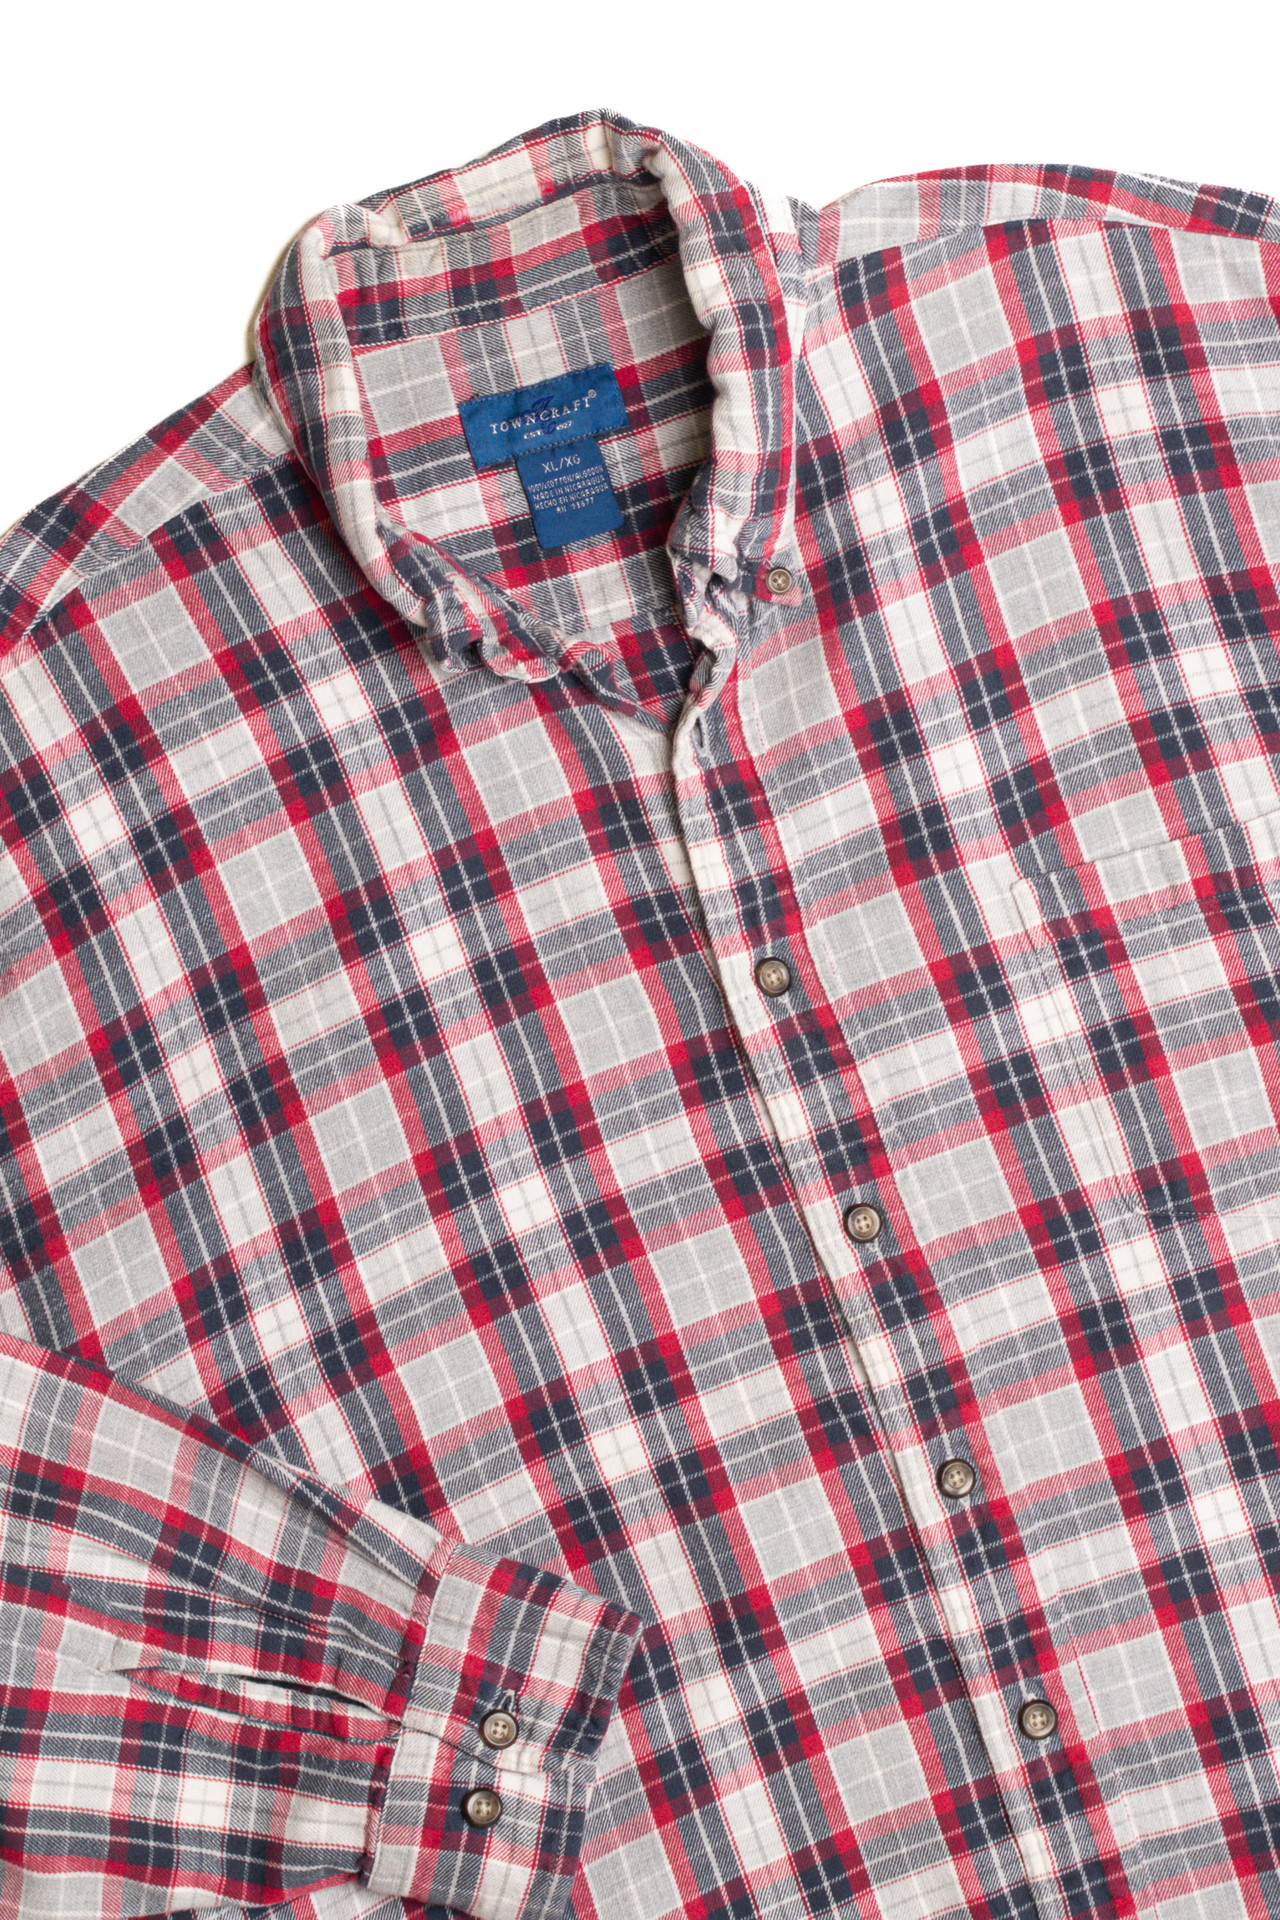 Towncraft Flannel Shirt - Ragstock.com